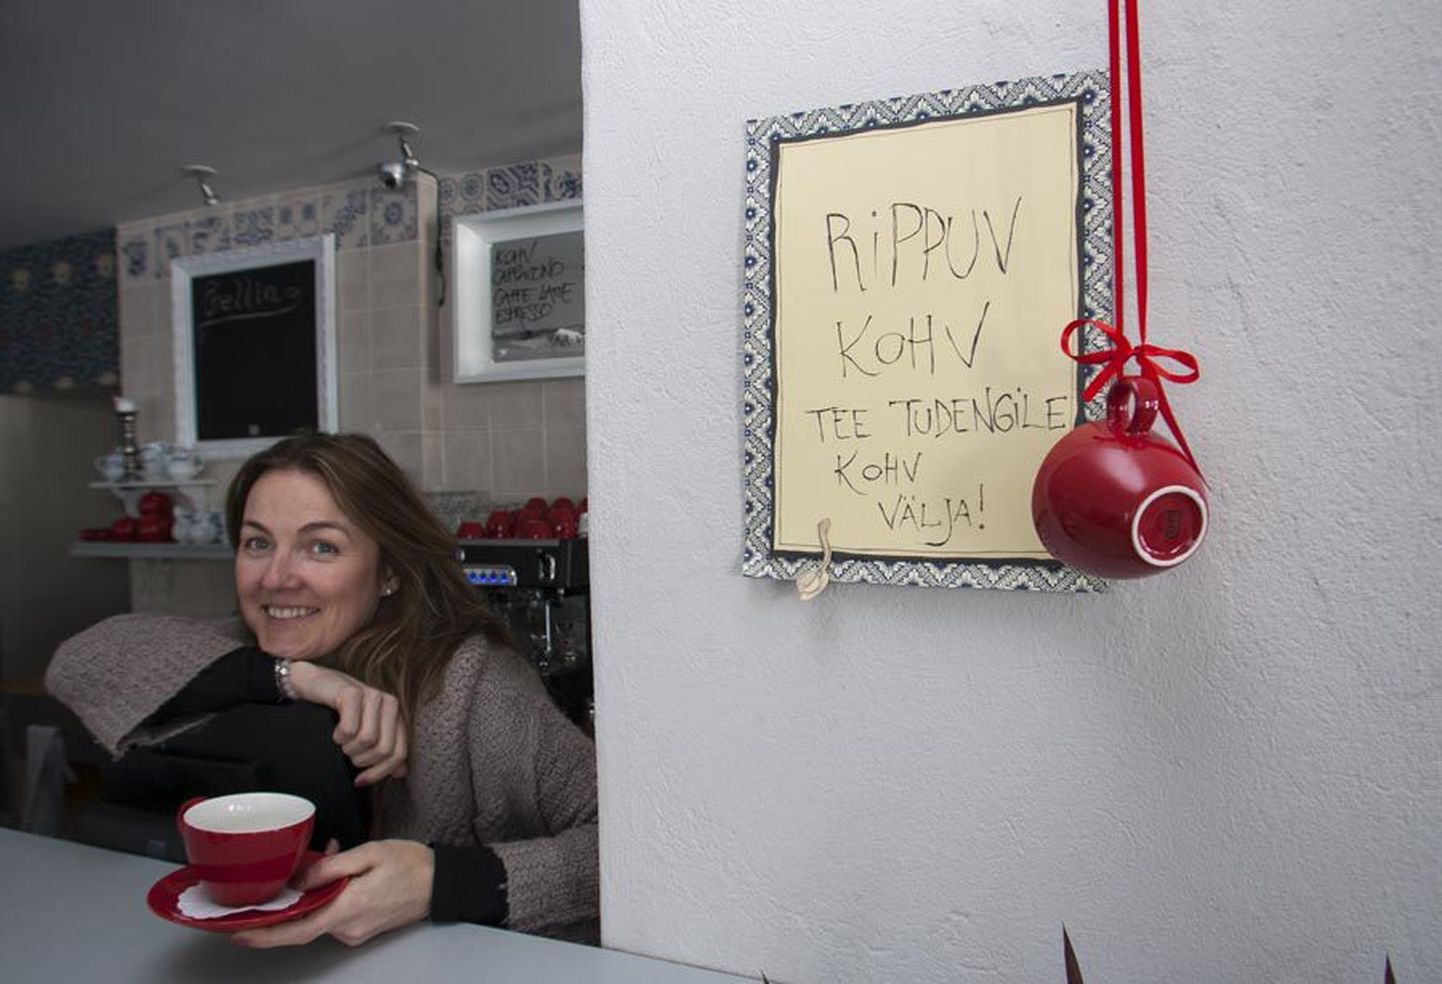 Merit Berzini kinnitusel märgib leti kõrval seinal saada olevate rippuvate kohvide arvu kohvitassikese kleeps.